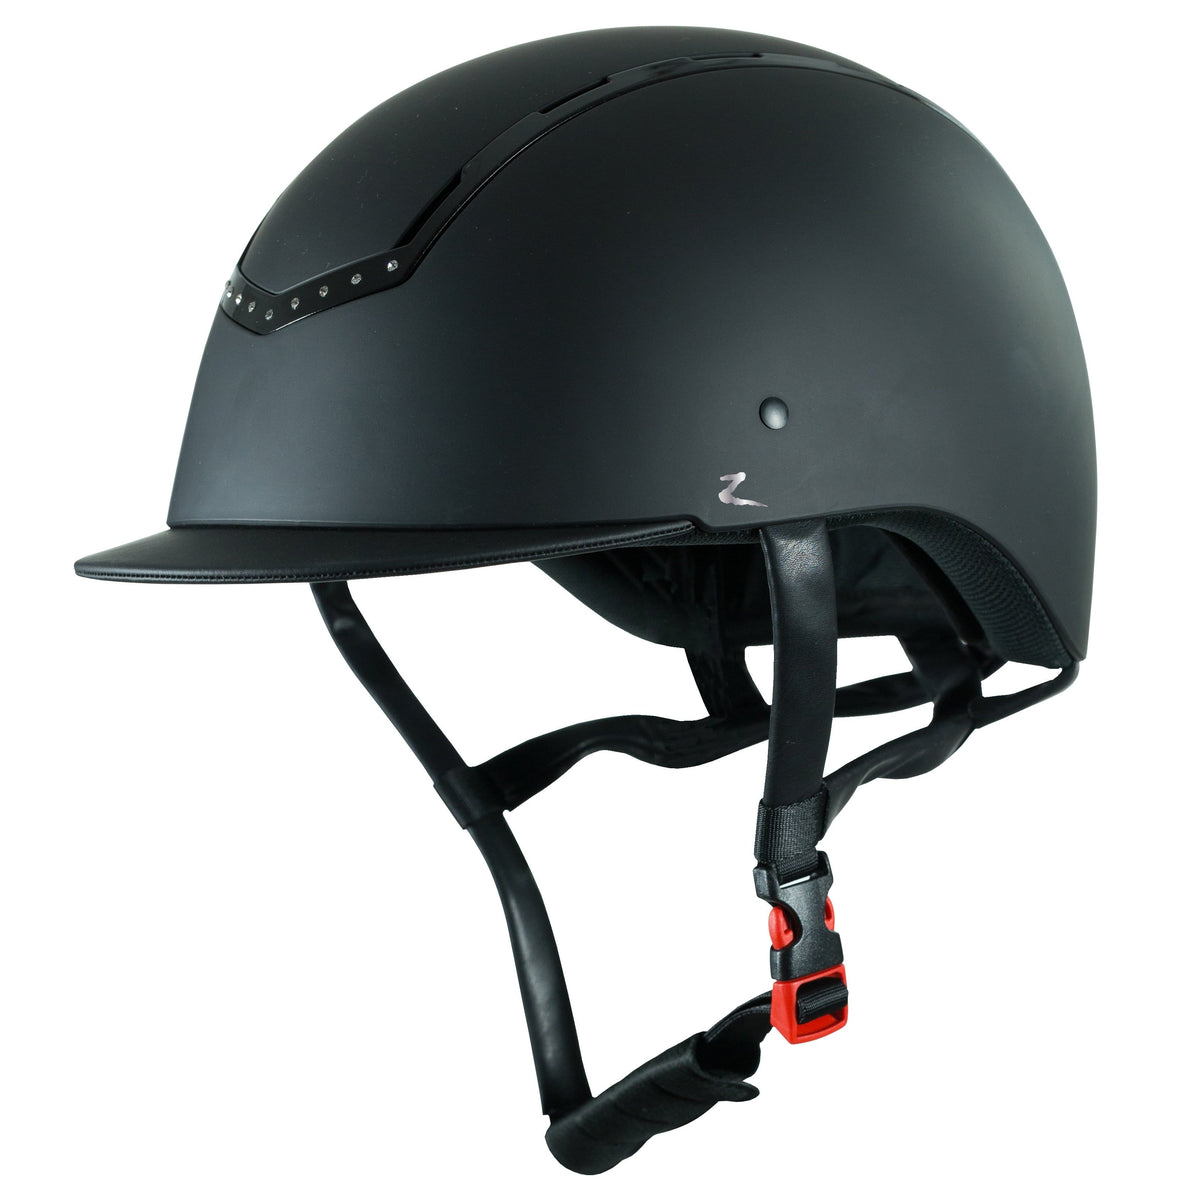 HORZE HELMETS & SAFETY Horze Empire Helmet Black Crystal